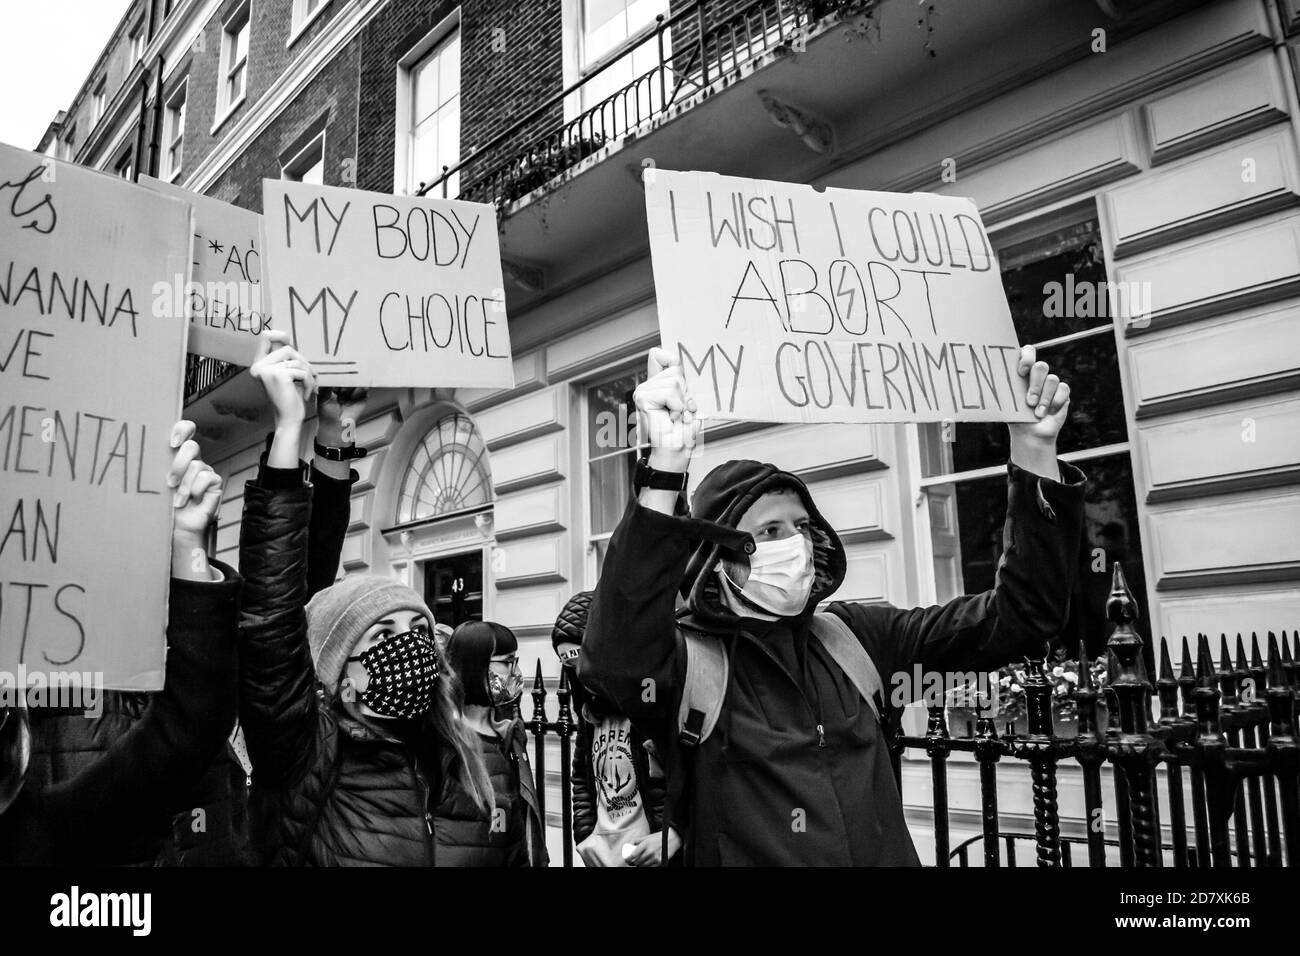 LONDRES/ANGLETERRE- 24 octobre 2020: Des manifestants à l'extérieur de l'ambassade de la République de Pologne protestent contre la nouvelle interdiction de l'avortement en Pologne Banque D'Images